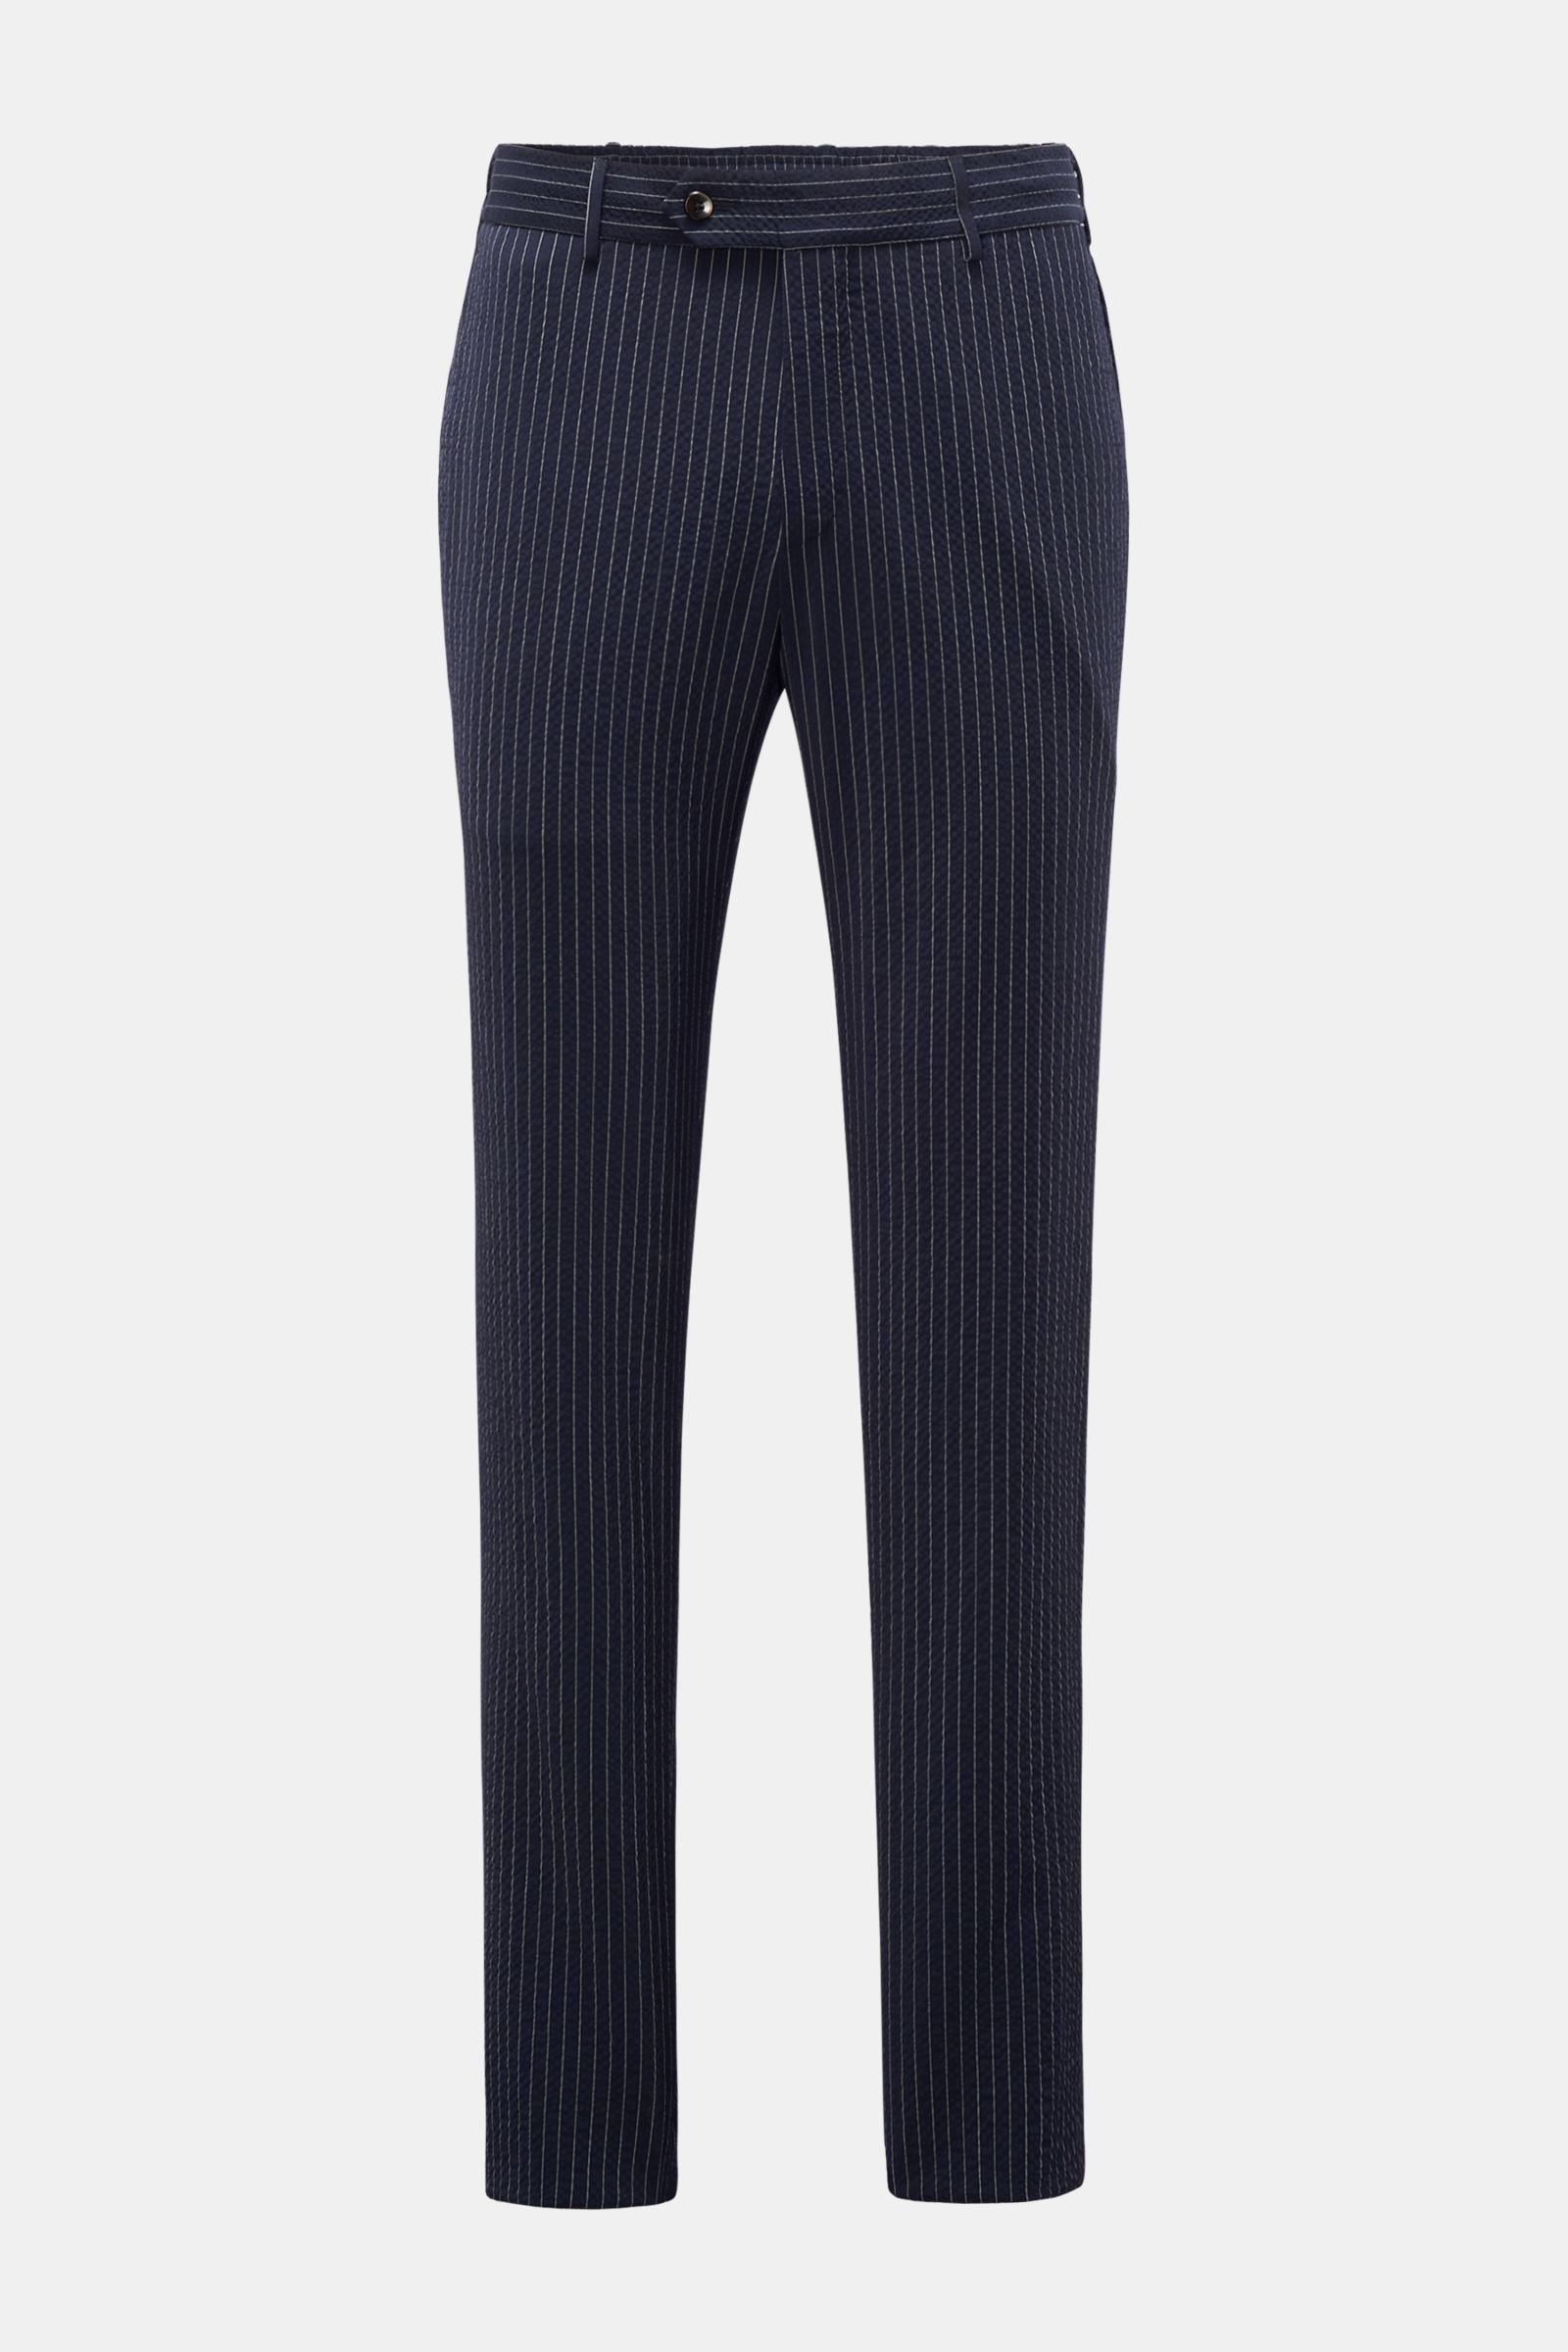 Seersucker-wool jogger pants 'Slim Fit' navy/white striped